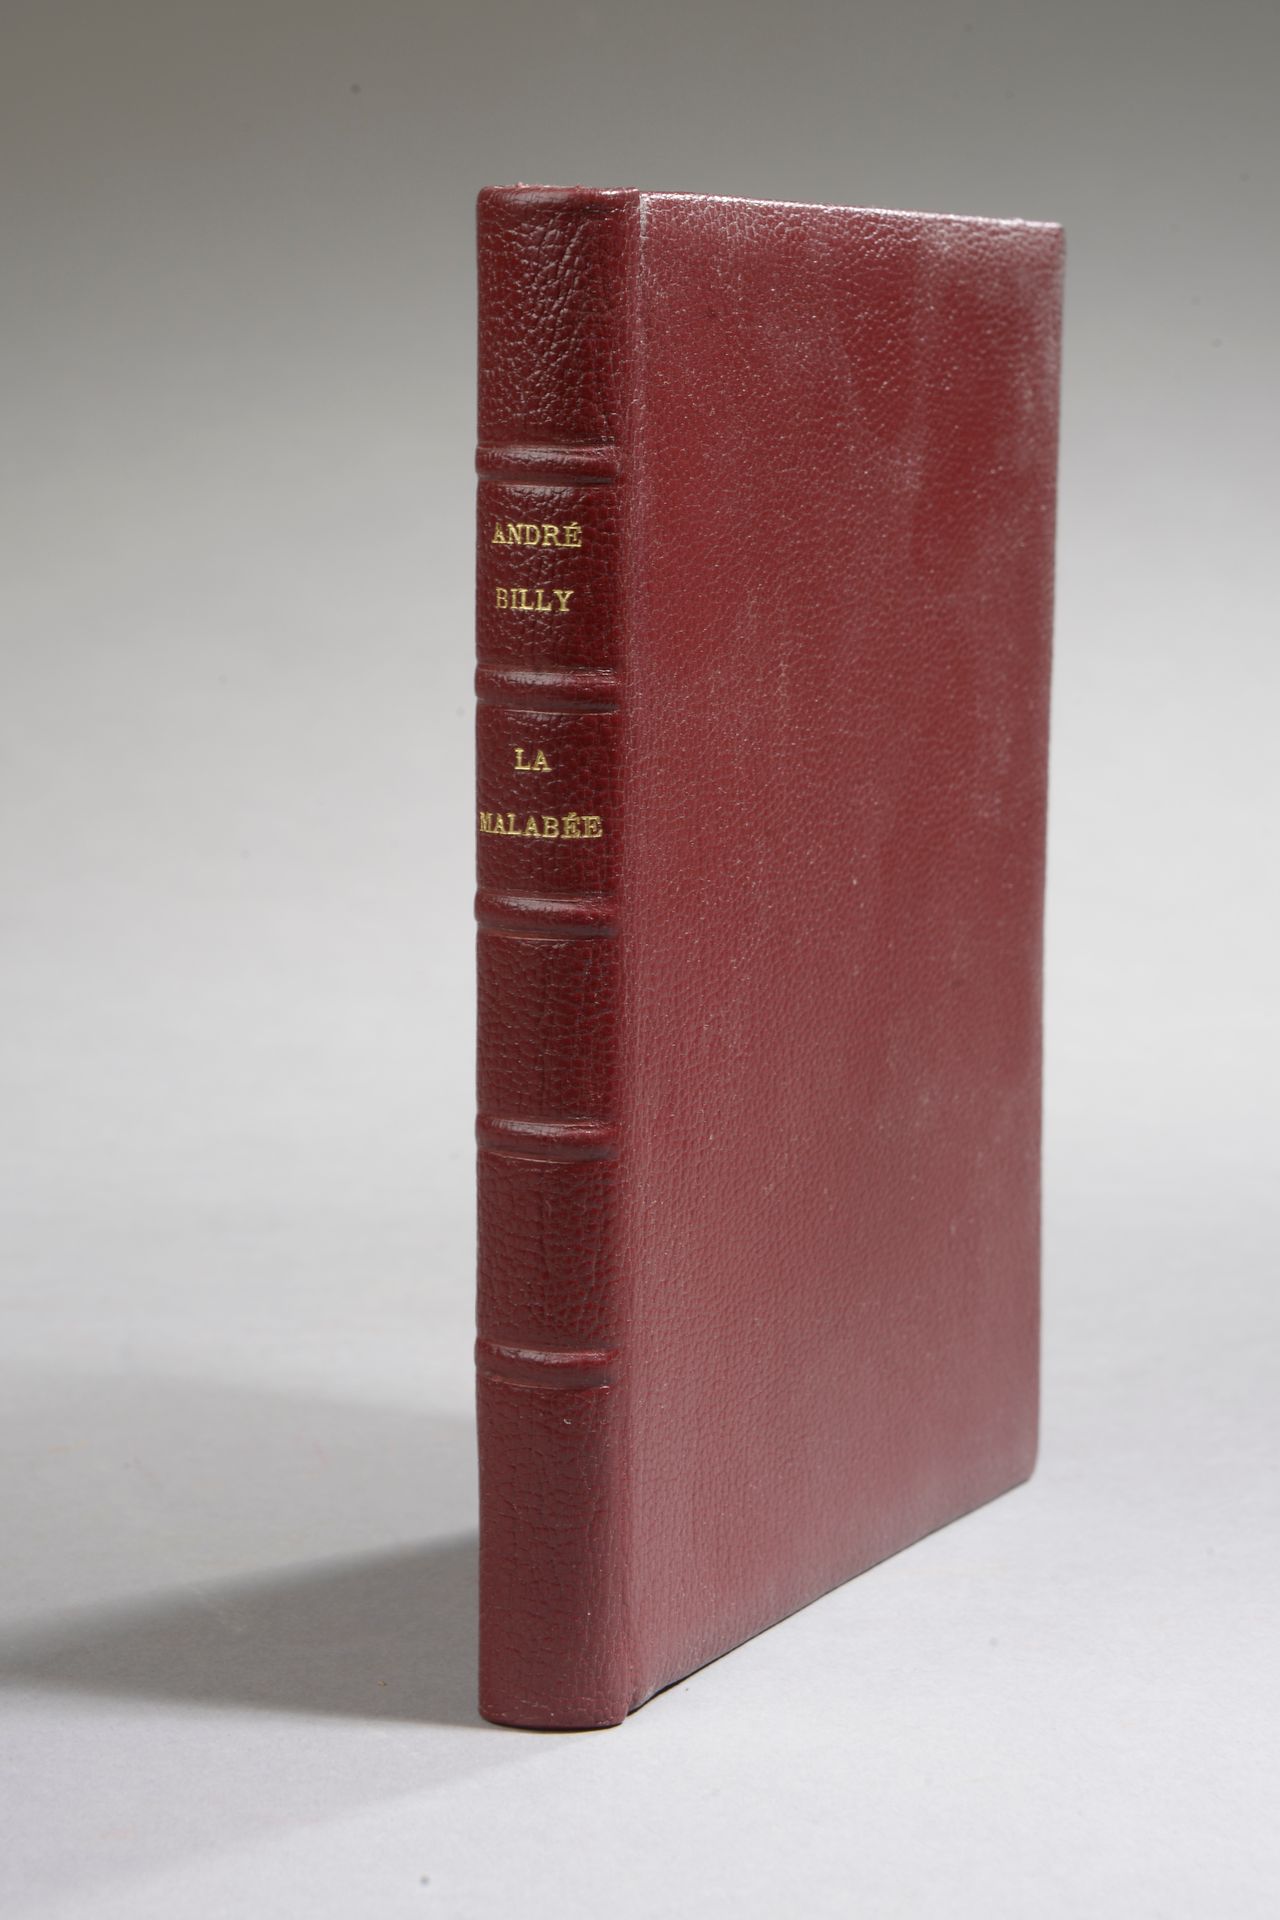 Null BILLY (André), La malabée. Paris, société littéraire de France, 1917.

Peti&hellip;